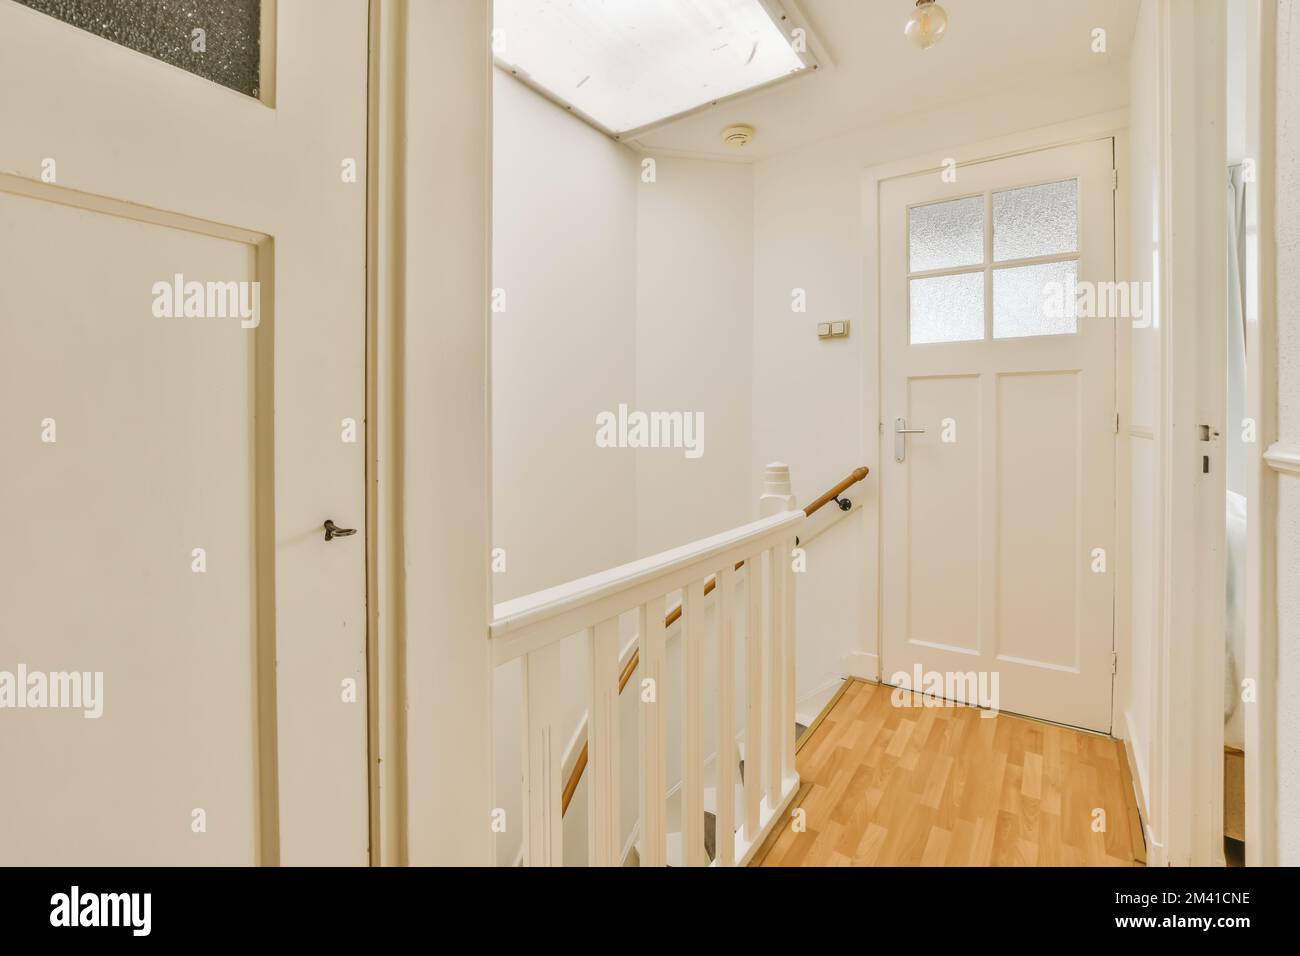 una stanza vuota con pareti bianche e pavimento in legno la porta è aperta sul lato destro della stanza Foto Stock